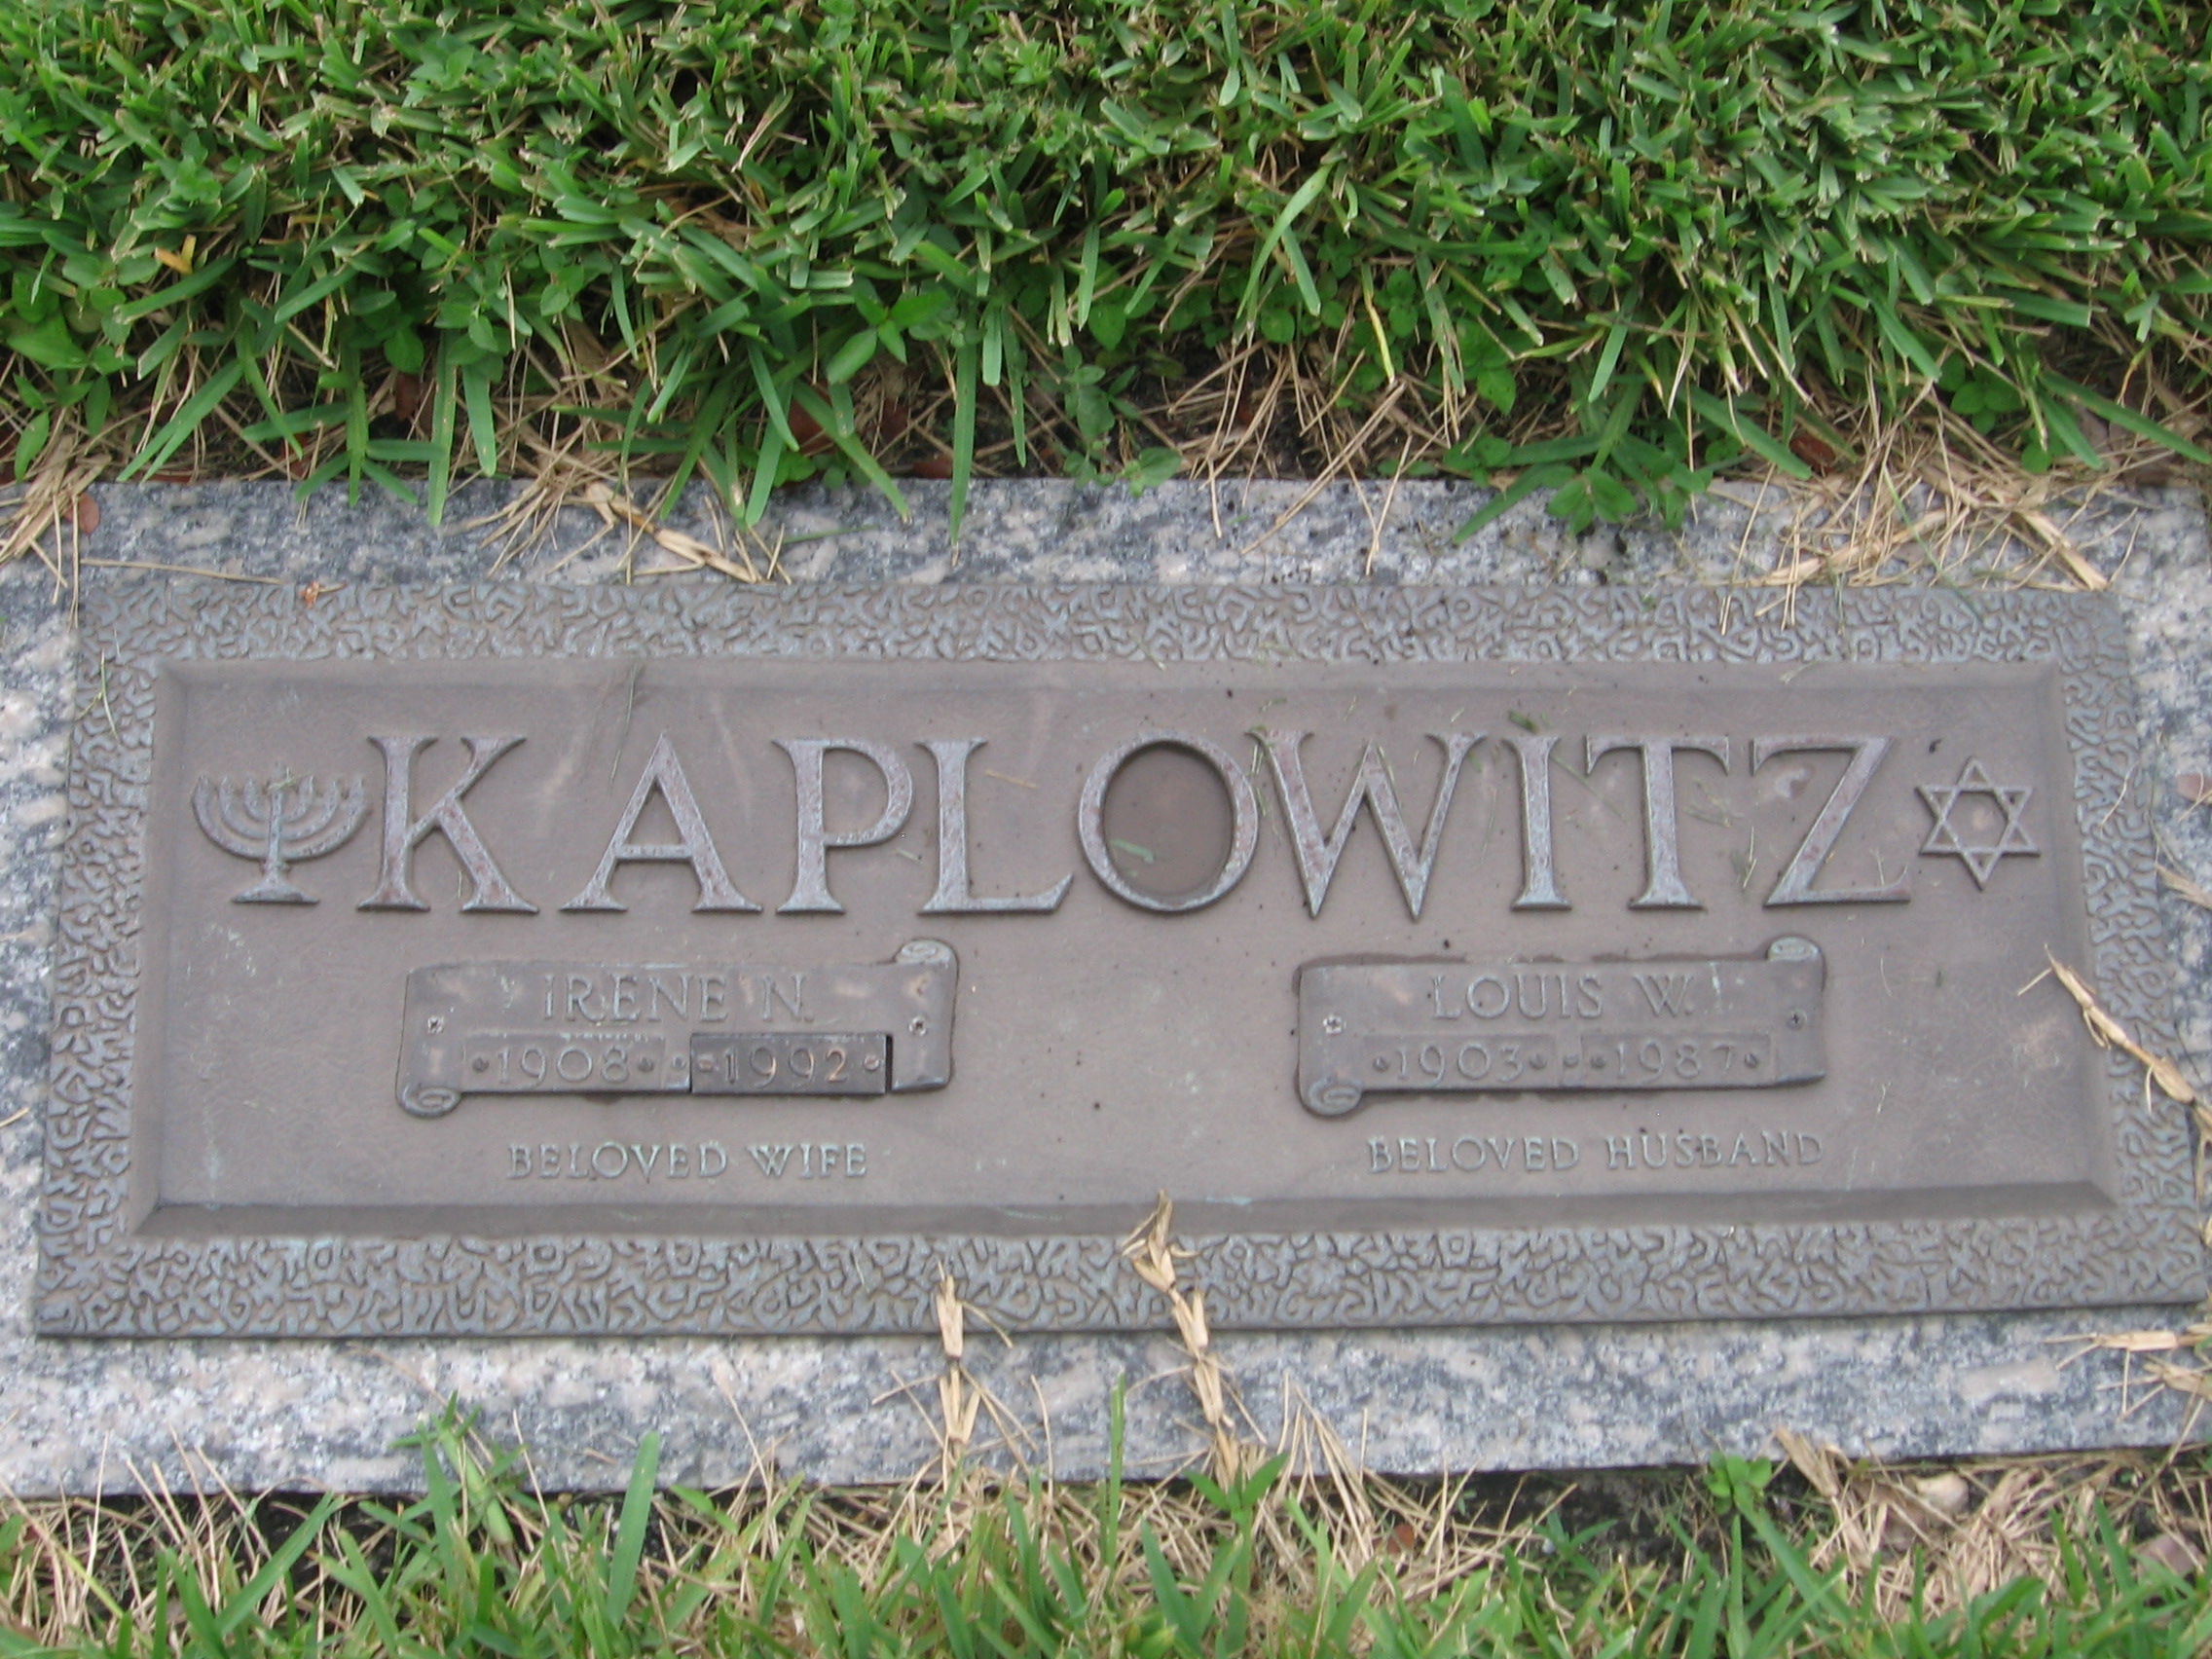 Louis W Kaplowitz